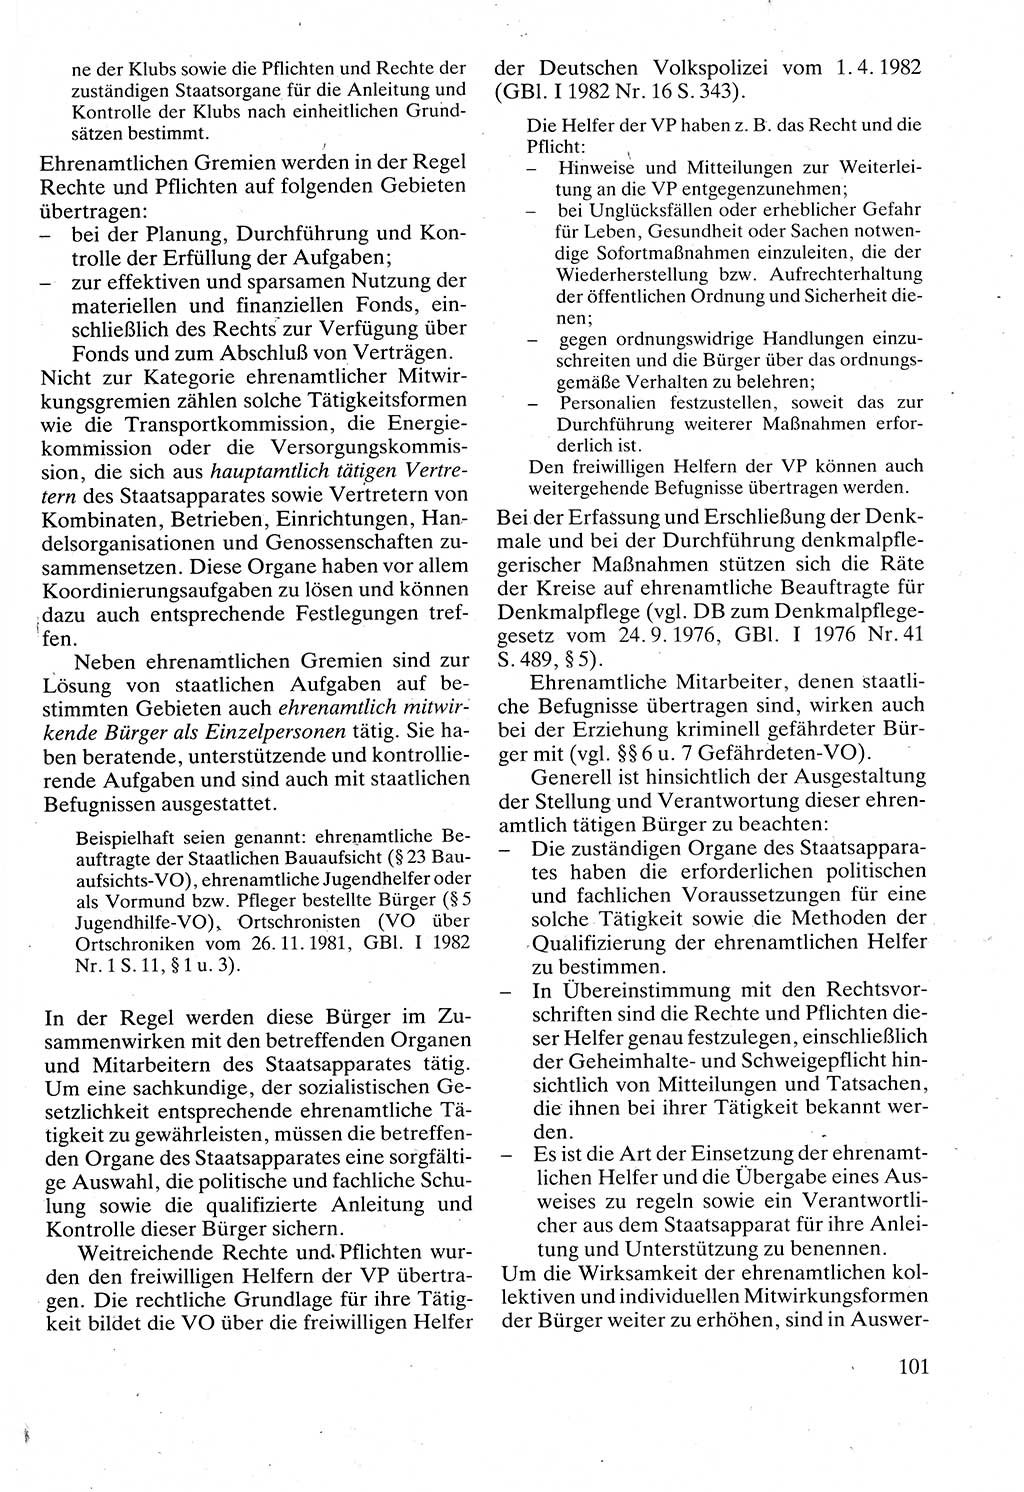 Verwaltungsrecht [Deutsche Demokratische Republik (DDR)], Lehrbuch 1988, Seite 101 (Verw.-R. DDR Lb. 1988, S. 101)